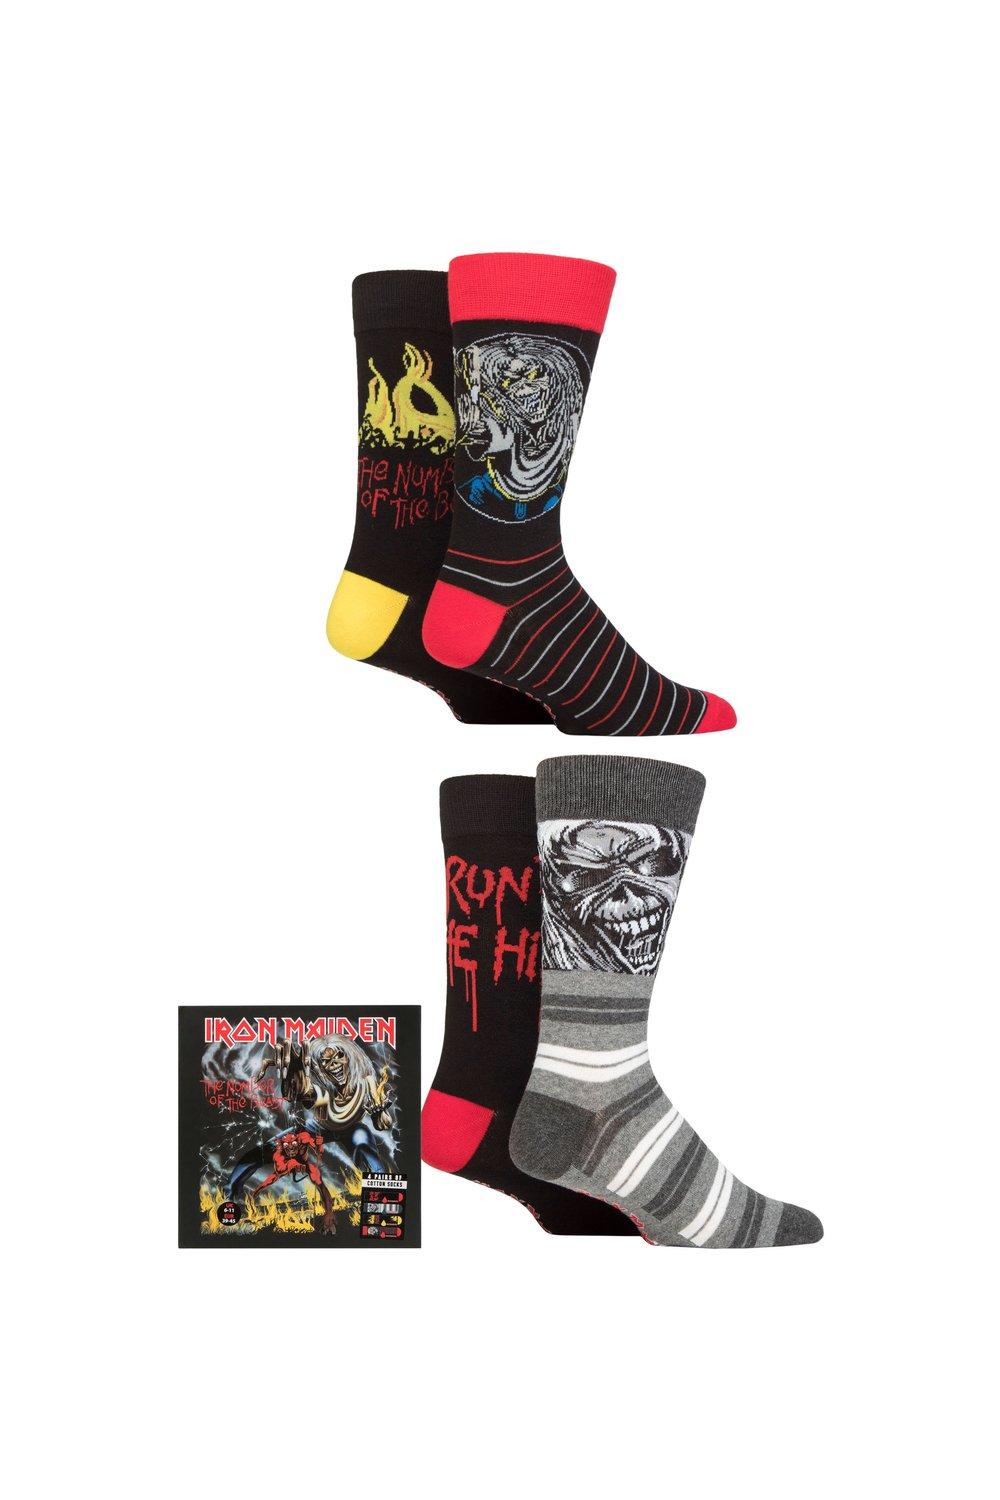 Iron Maiden, 4 пары хлопковых носков в подарочной упаковке, эксклюзивно для SOCKSHOP, мультиколор iron maiden the number of the beast [vinyl lp]